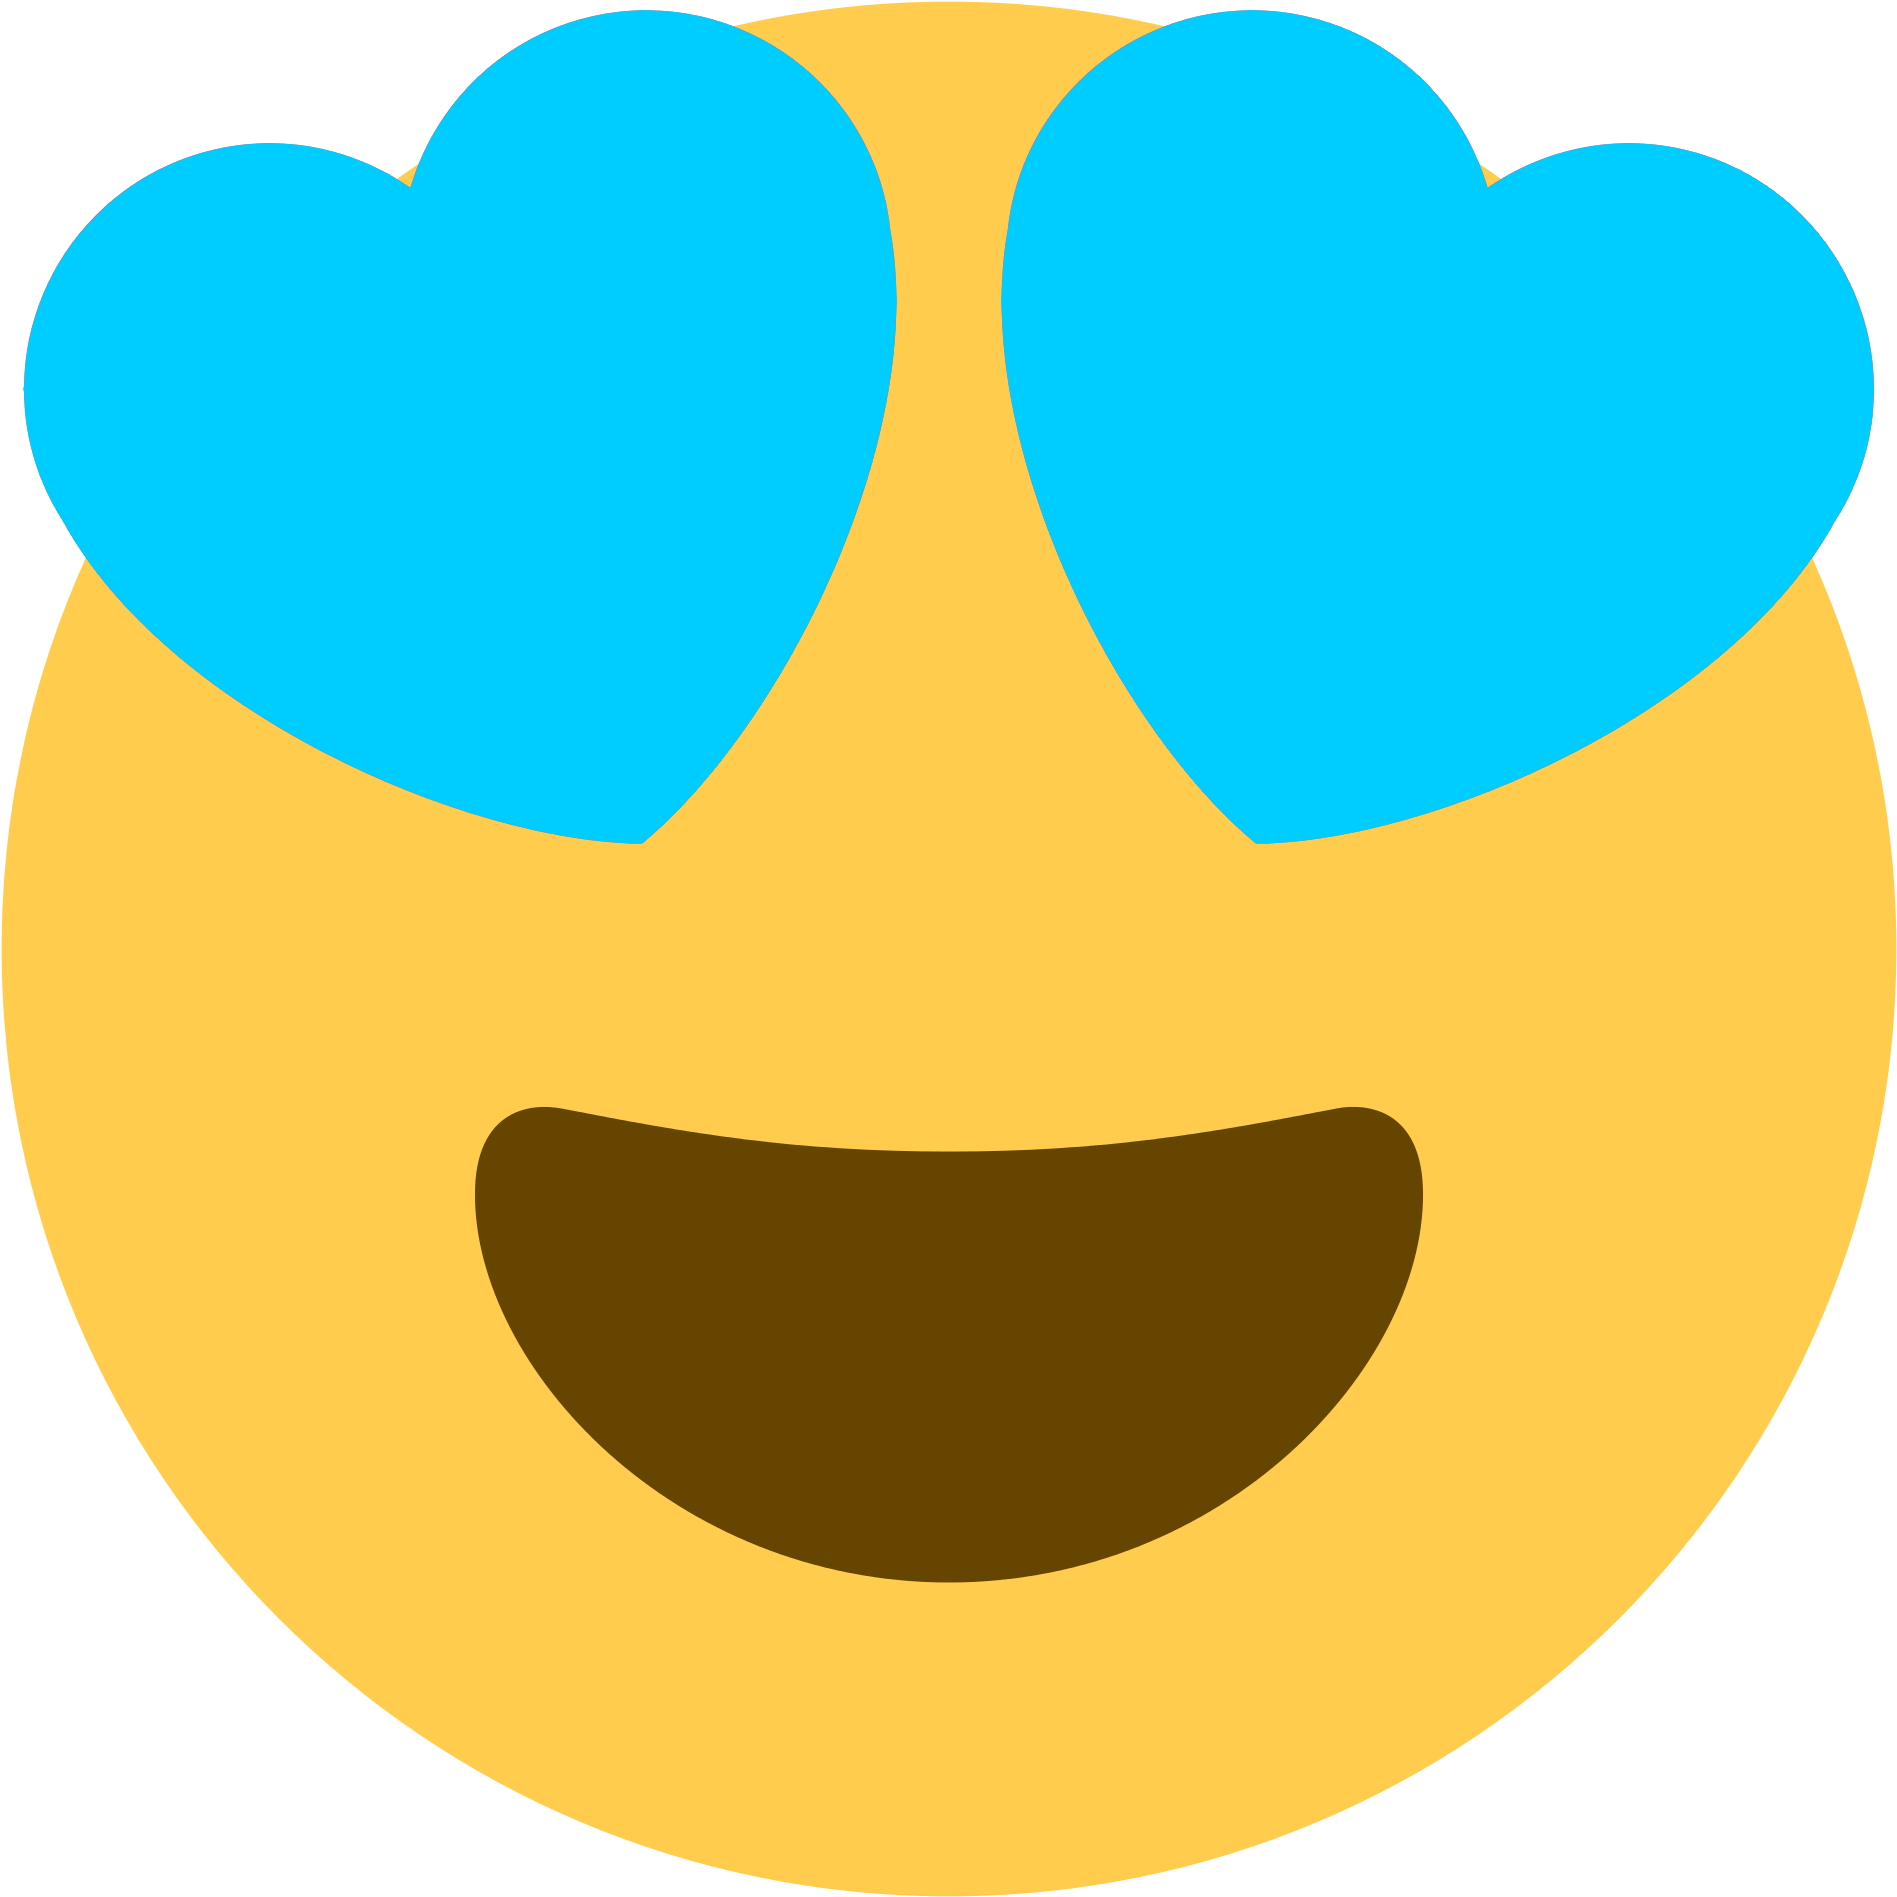 Heart Eye Emoji PNG Isolated Image